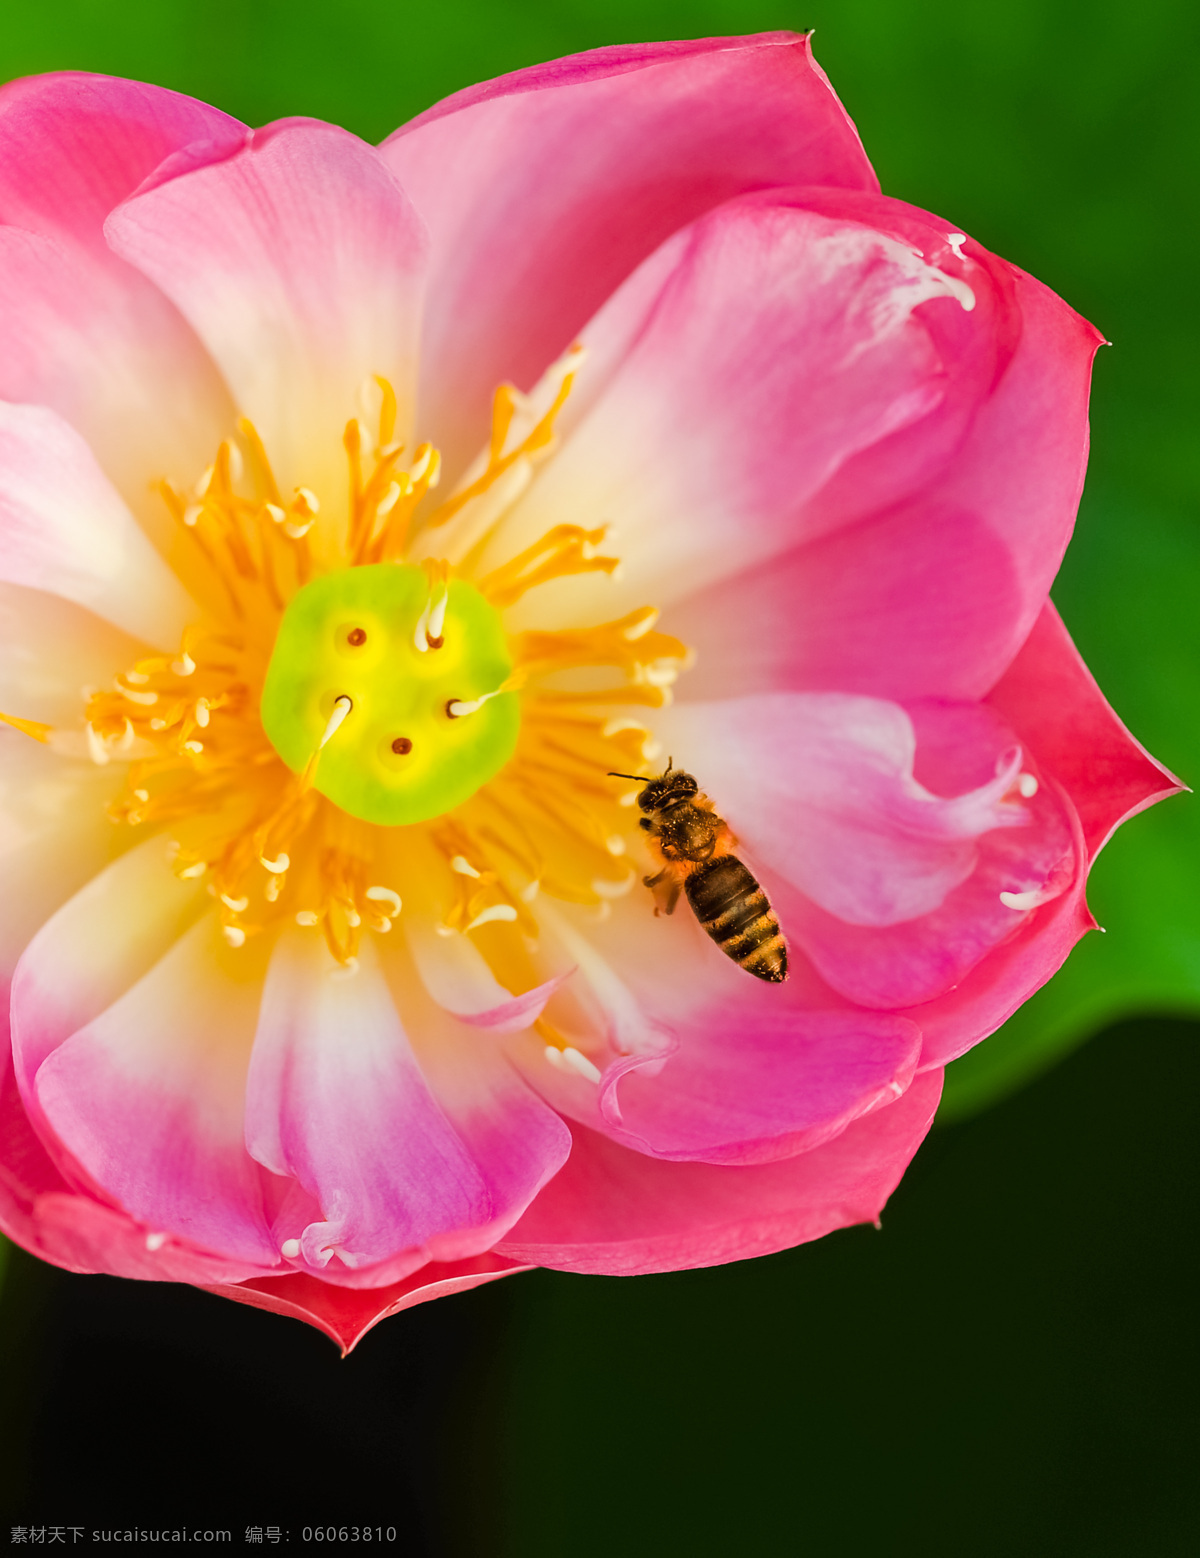 荷花蜜蜂 荷花 莲花 微距 荷叶 莲叶 蜜蜂 飞 红莲花 花草 生物世界